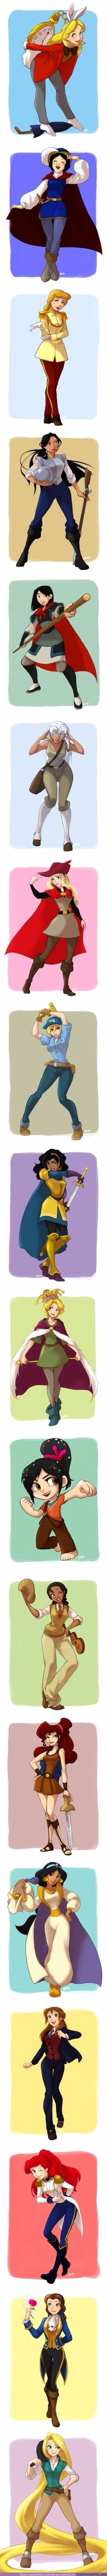 14181 - Así lucirían las Princesas Disney con las vestimentas de los protagonistas masculinos